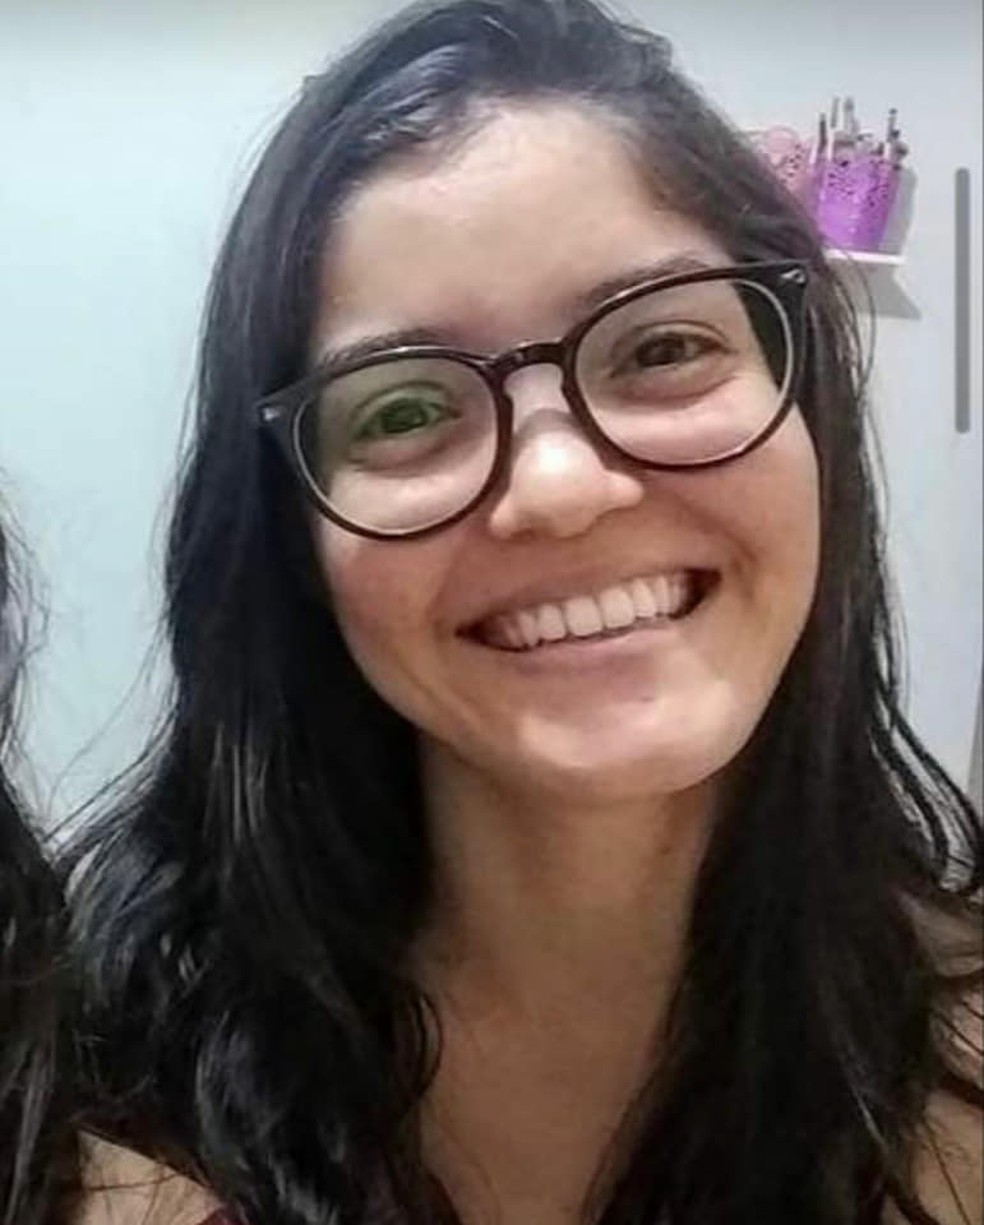 Enfermeira Aline Porfírio da Silva morreu em acidente com ambulância na BR-163 — Foto: Facebook